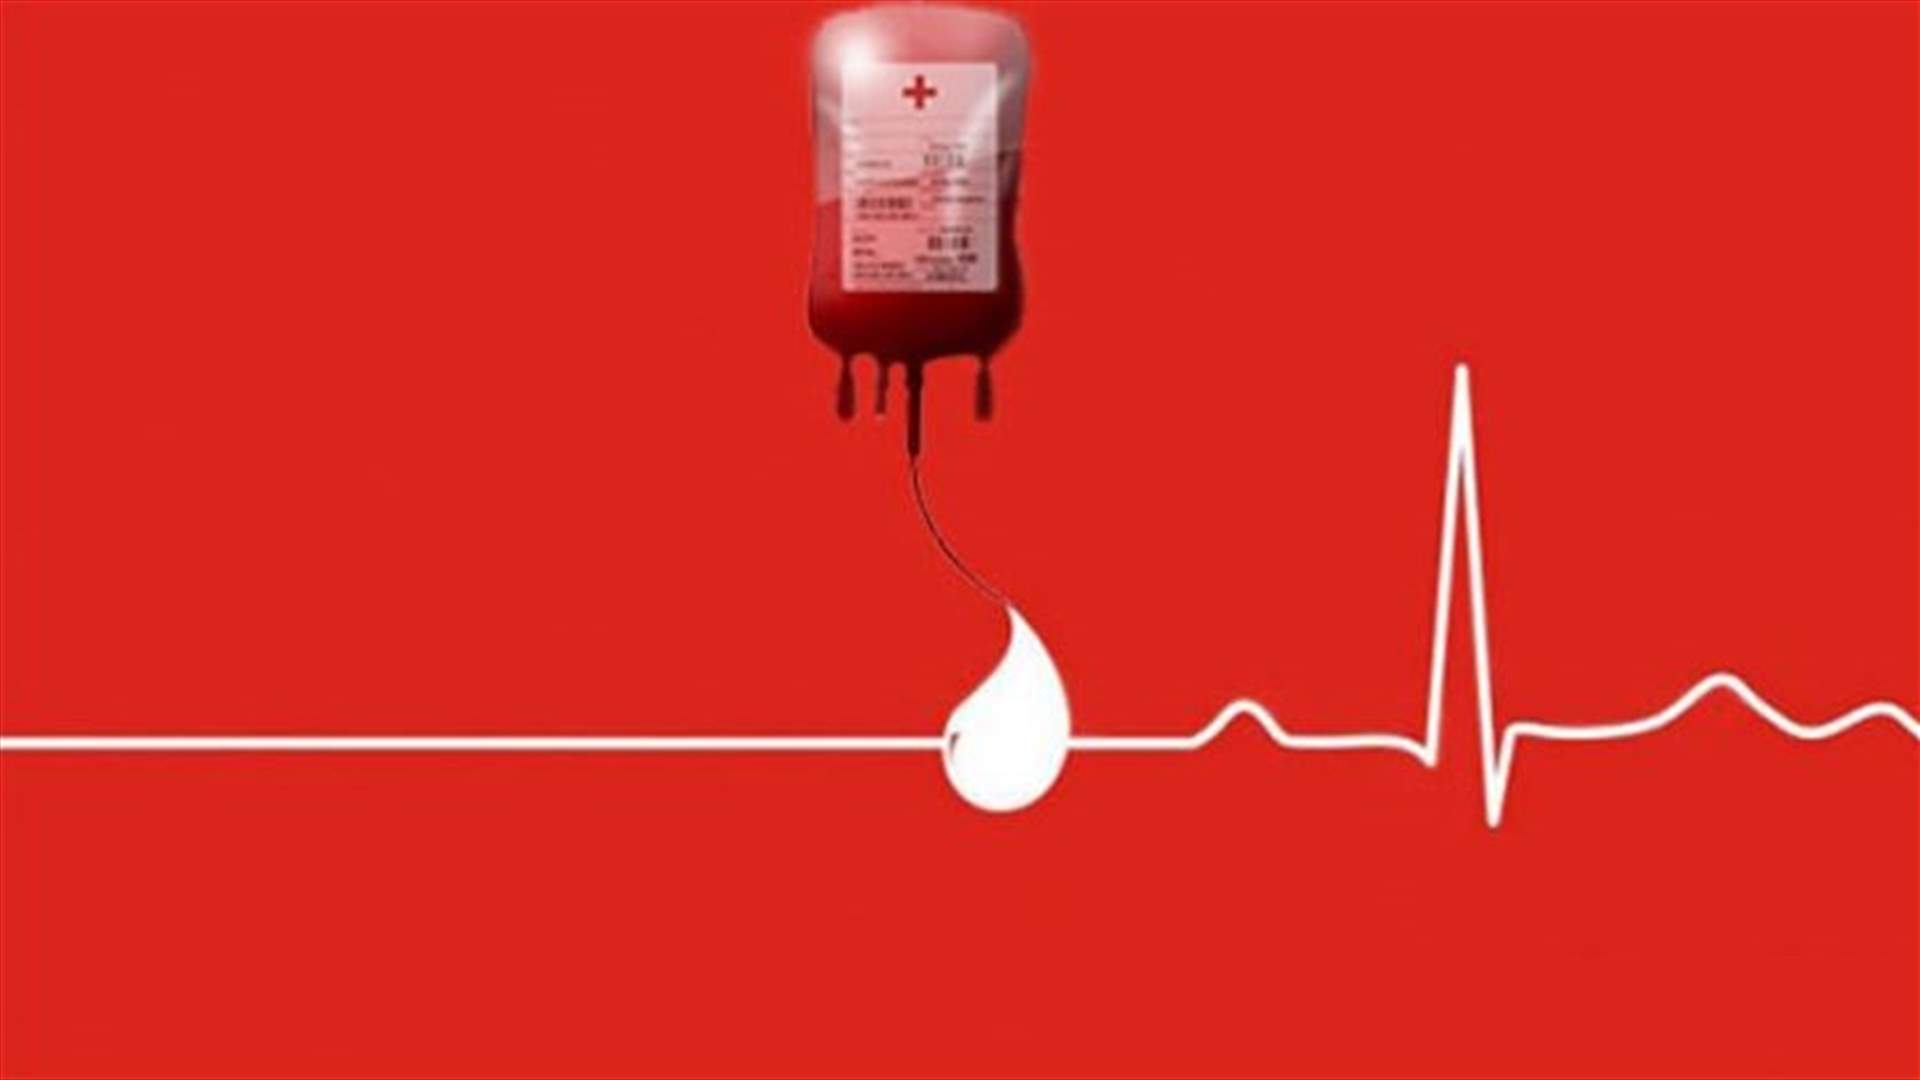 مطلوب ٤ وحدات دم من فئة B+ لحالة حرجة في مستشفى بيروت الحكومي...للمزيد الاتصال على الرقم 76852891